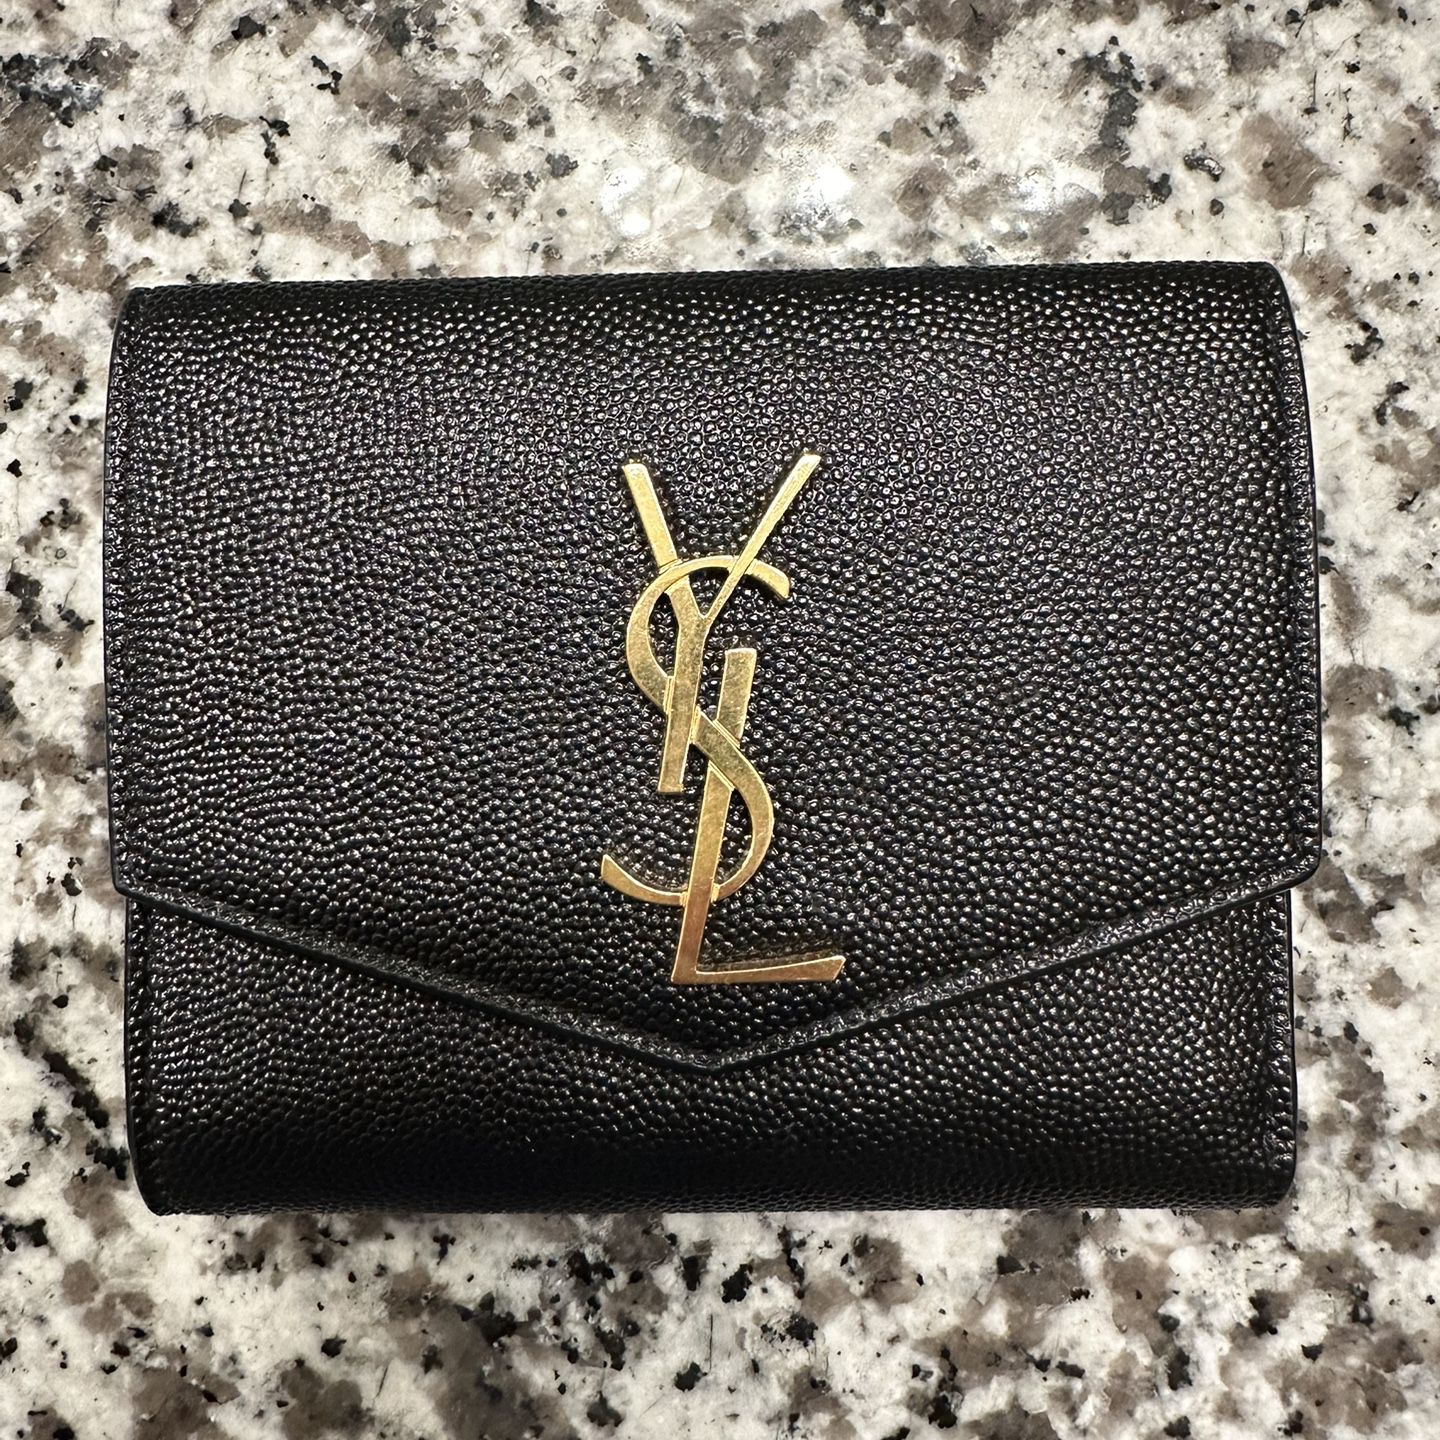 YSL wallet